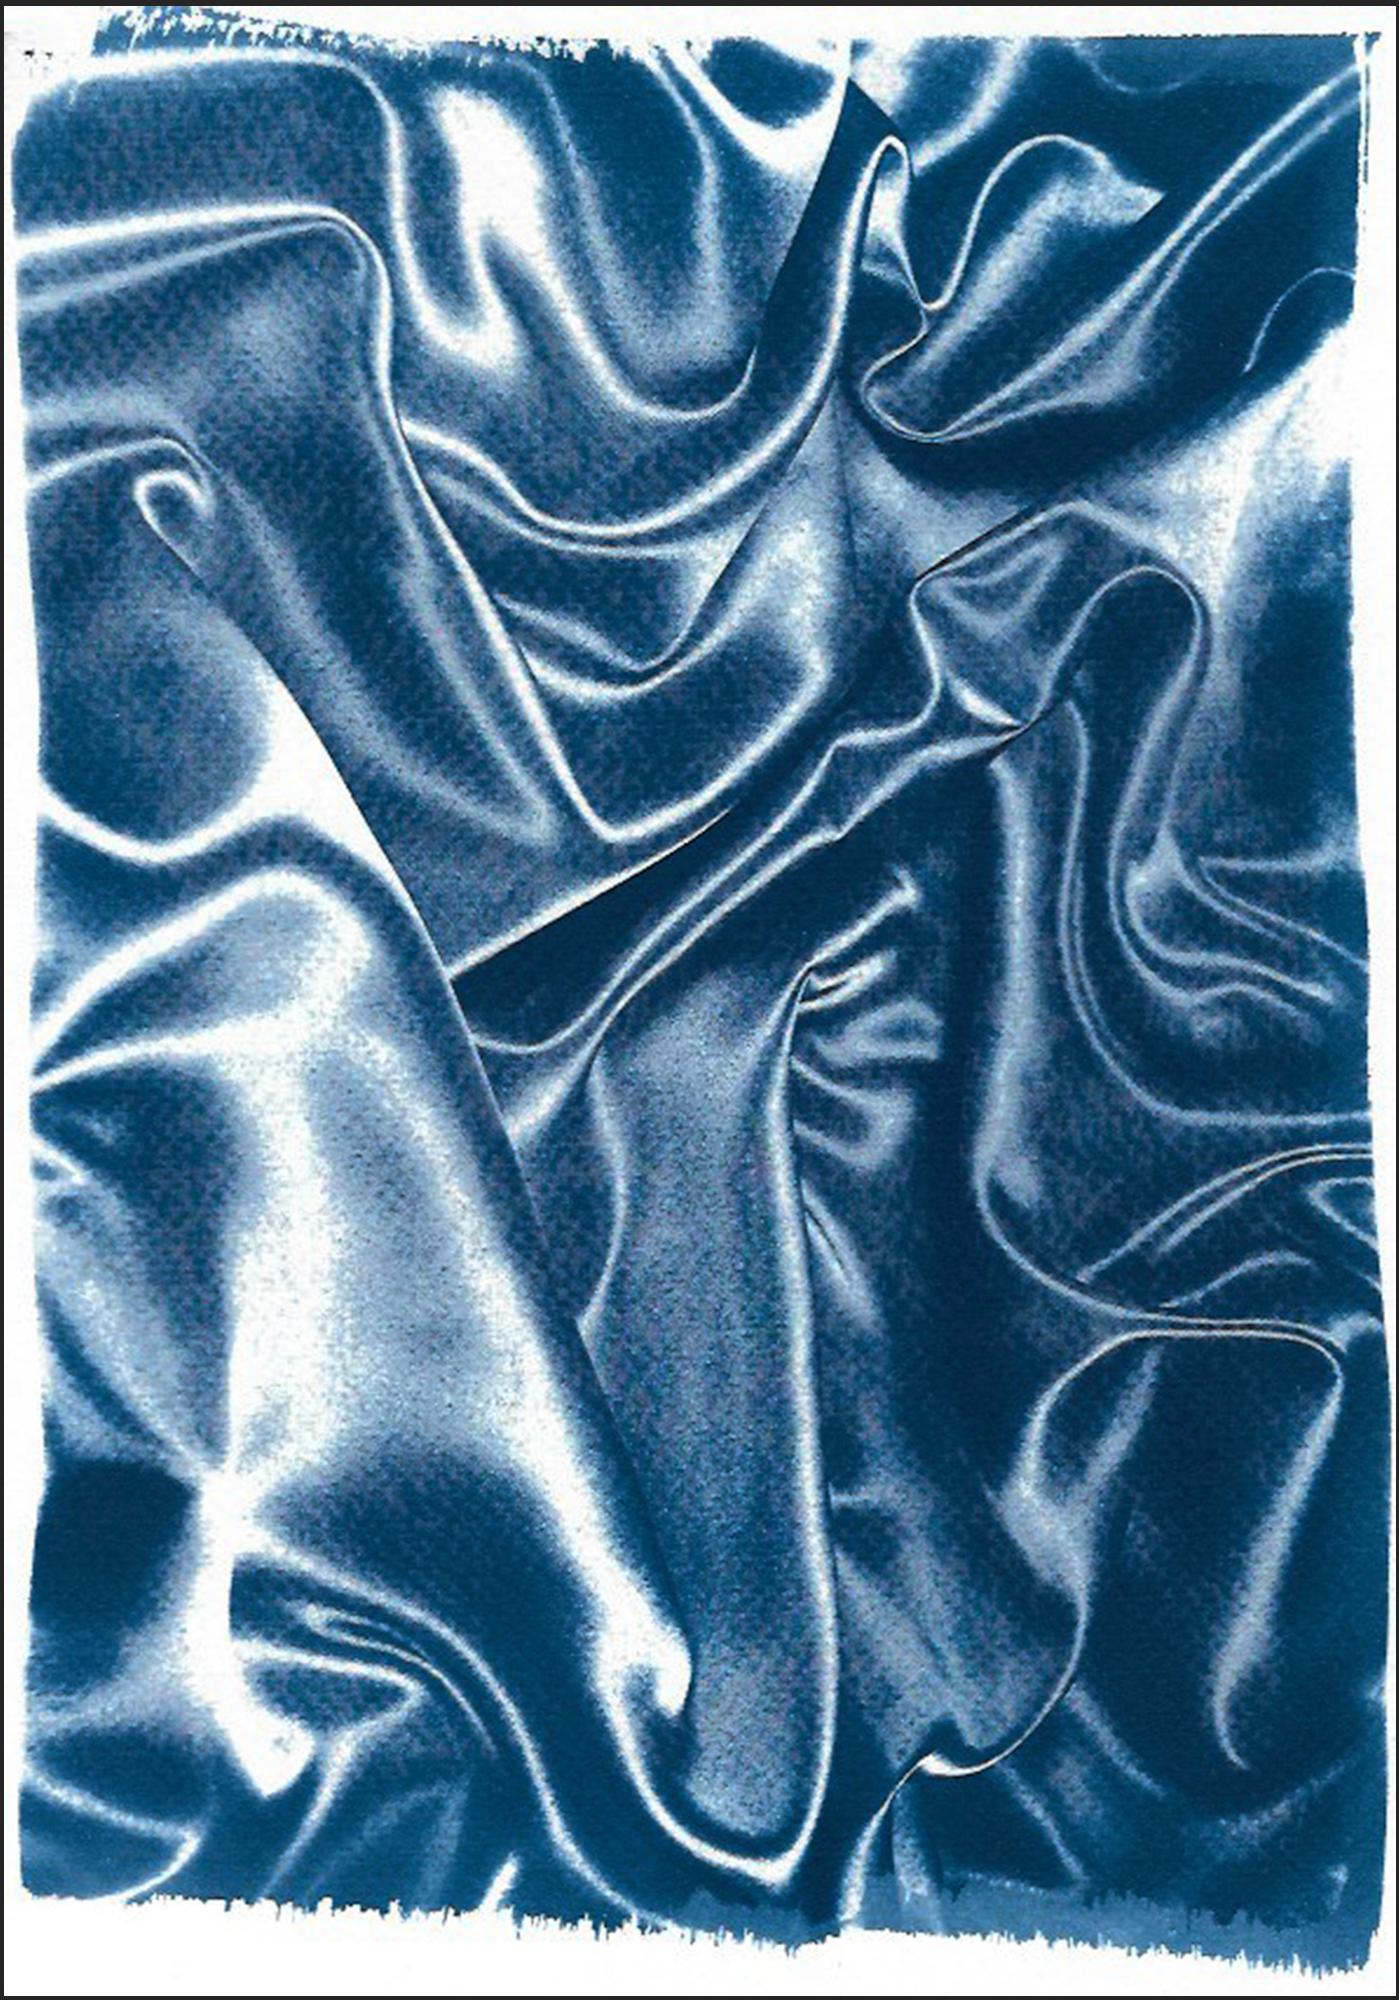 Klassische blaue Seidenbewegung, abstrakte Stoff Gesten, zeitgenössische Cyanotypie 